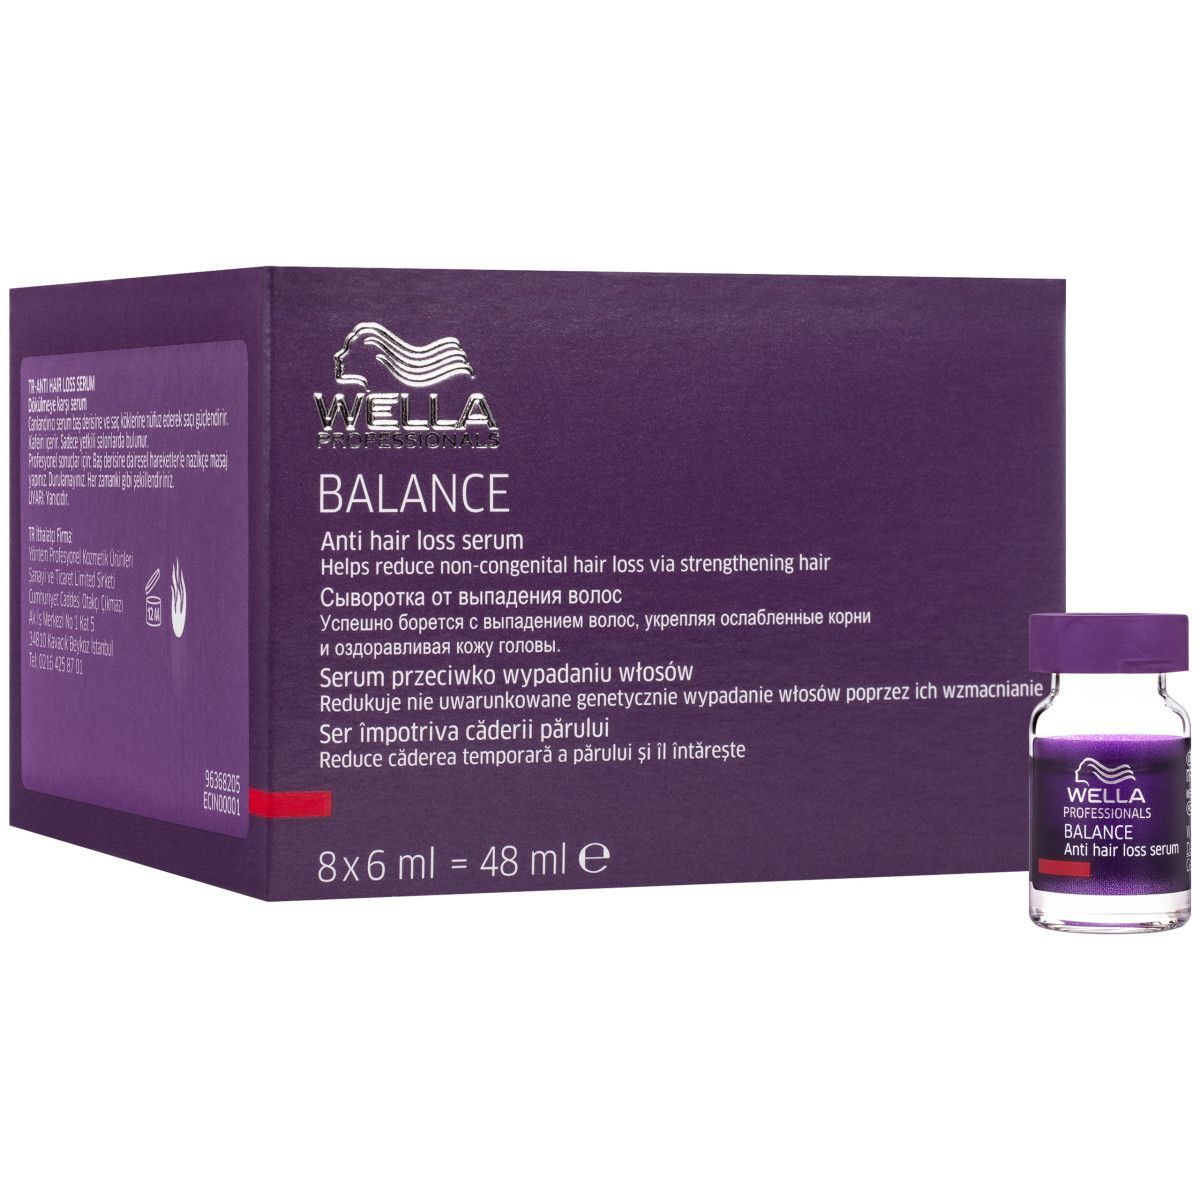 Wella Balance Anti Hair Loss Serum – wzmacniające serum w ampułkach na wypadanie, 8x6 ml